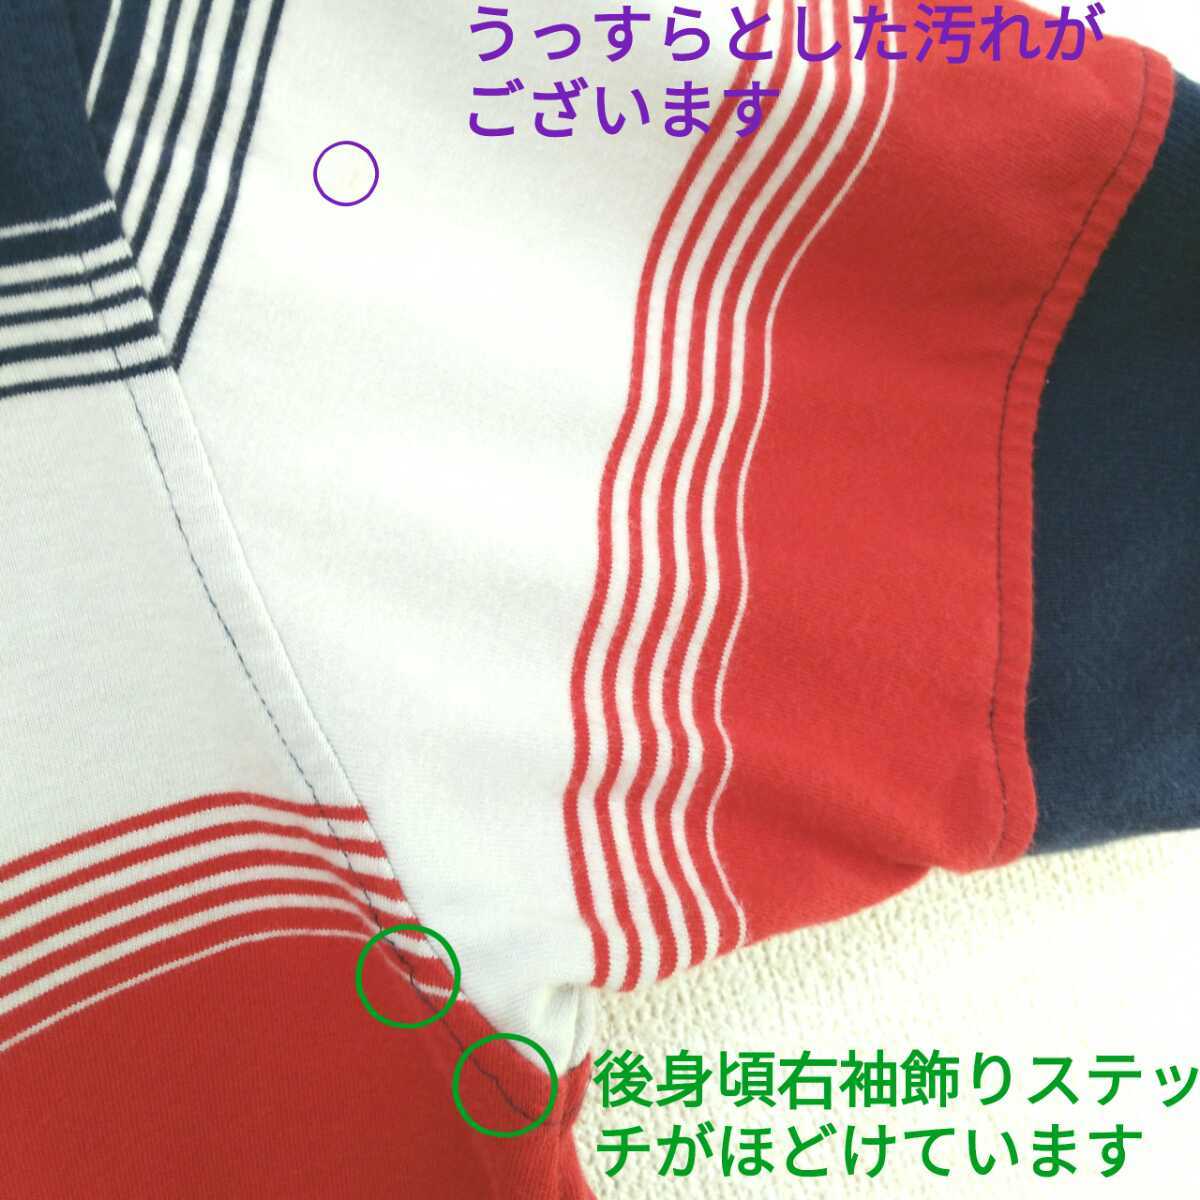 ナイキ NIKE メンズM 赤 レッド 紺 ネイビー 白 ホワイト ボーダー柄 刺繍ロゴ 半袖ポロシャツ カジュアル 春夏コーデ ユニセックス/J5